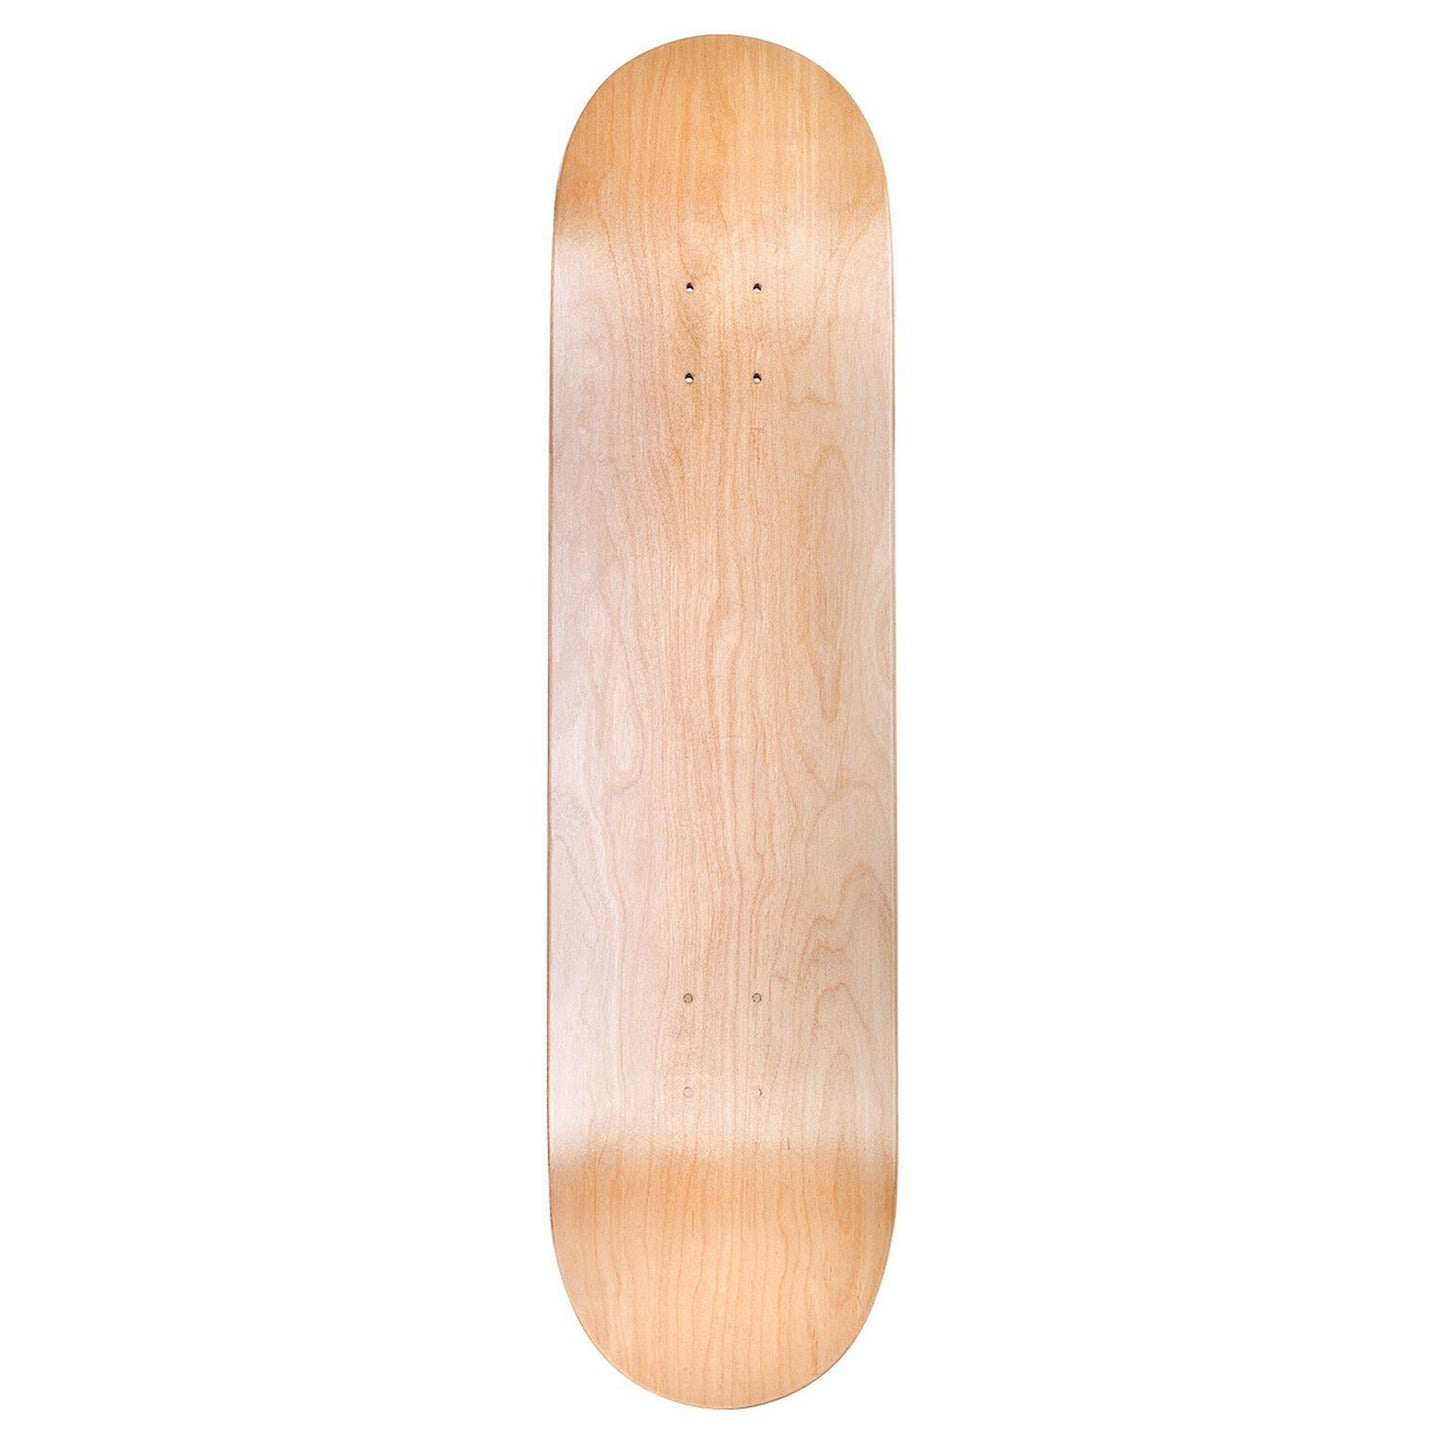 Blank Canadian Maple Skateboard Decks